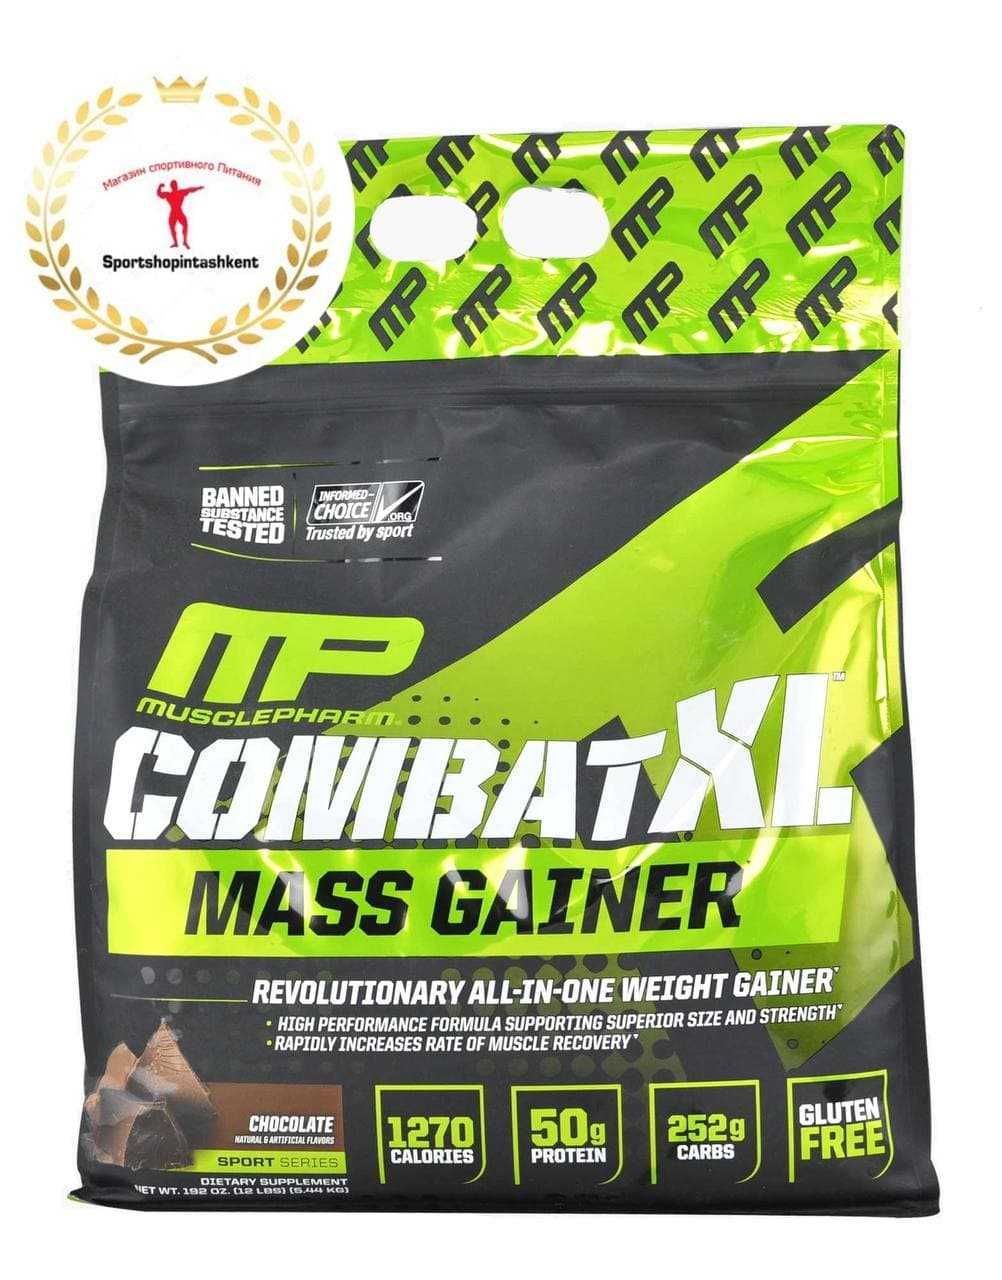 MusclePharm Combat XL Mass Gainerлучший помощник для набора массы.